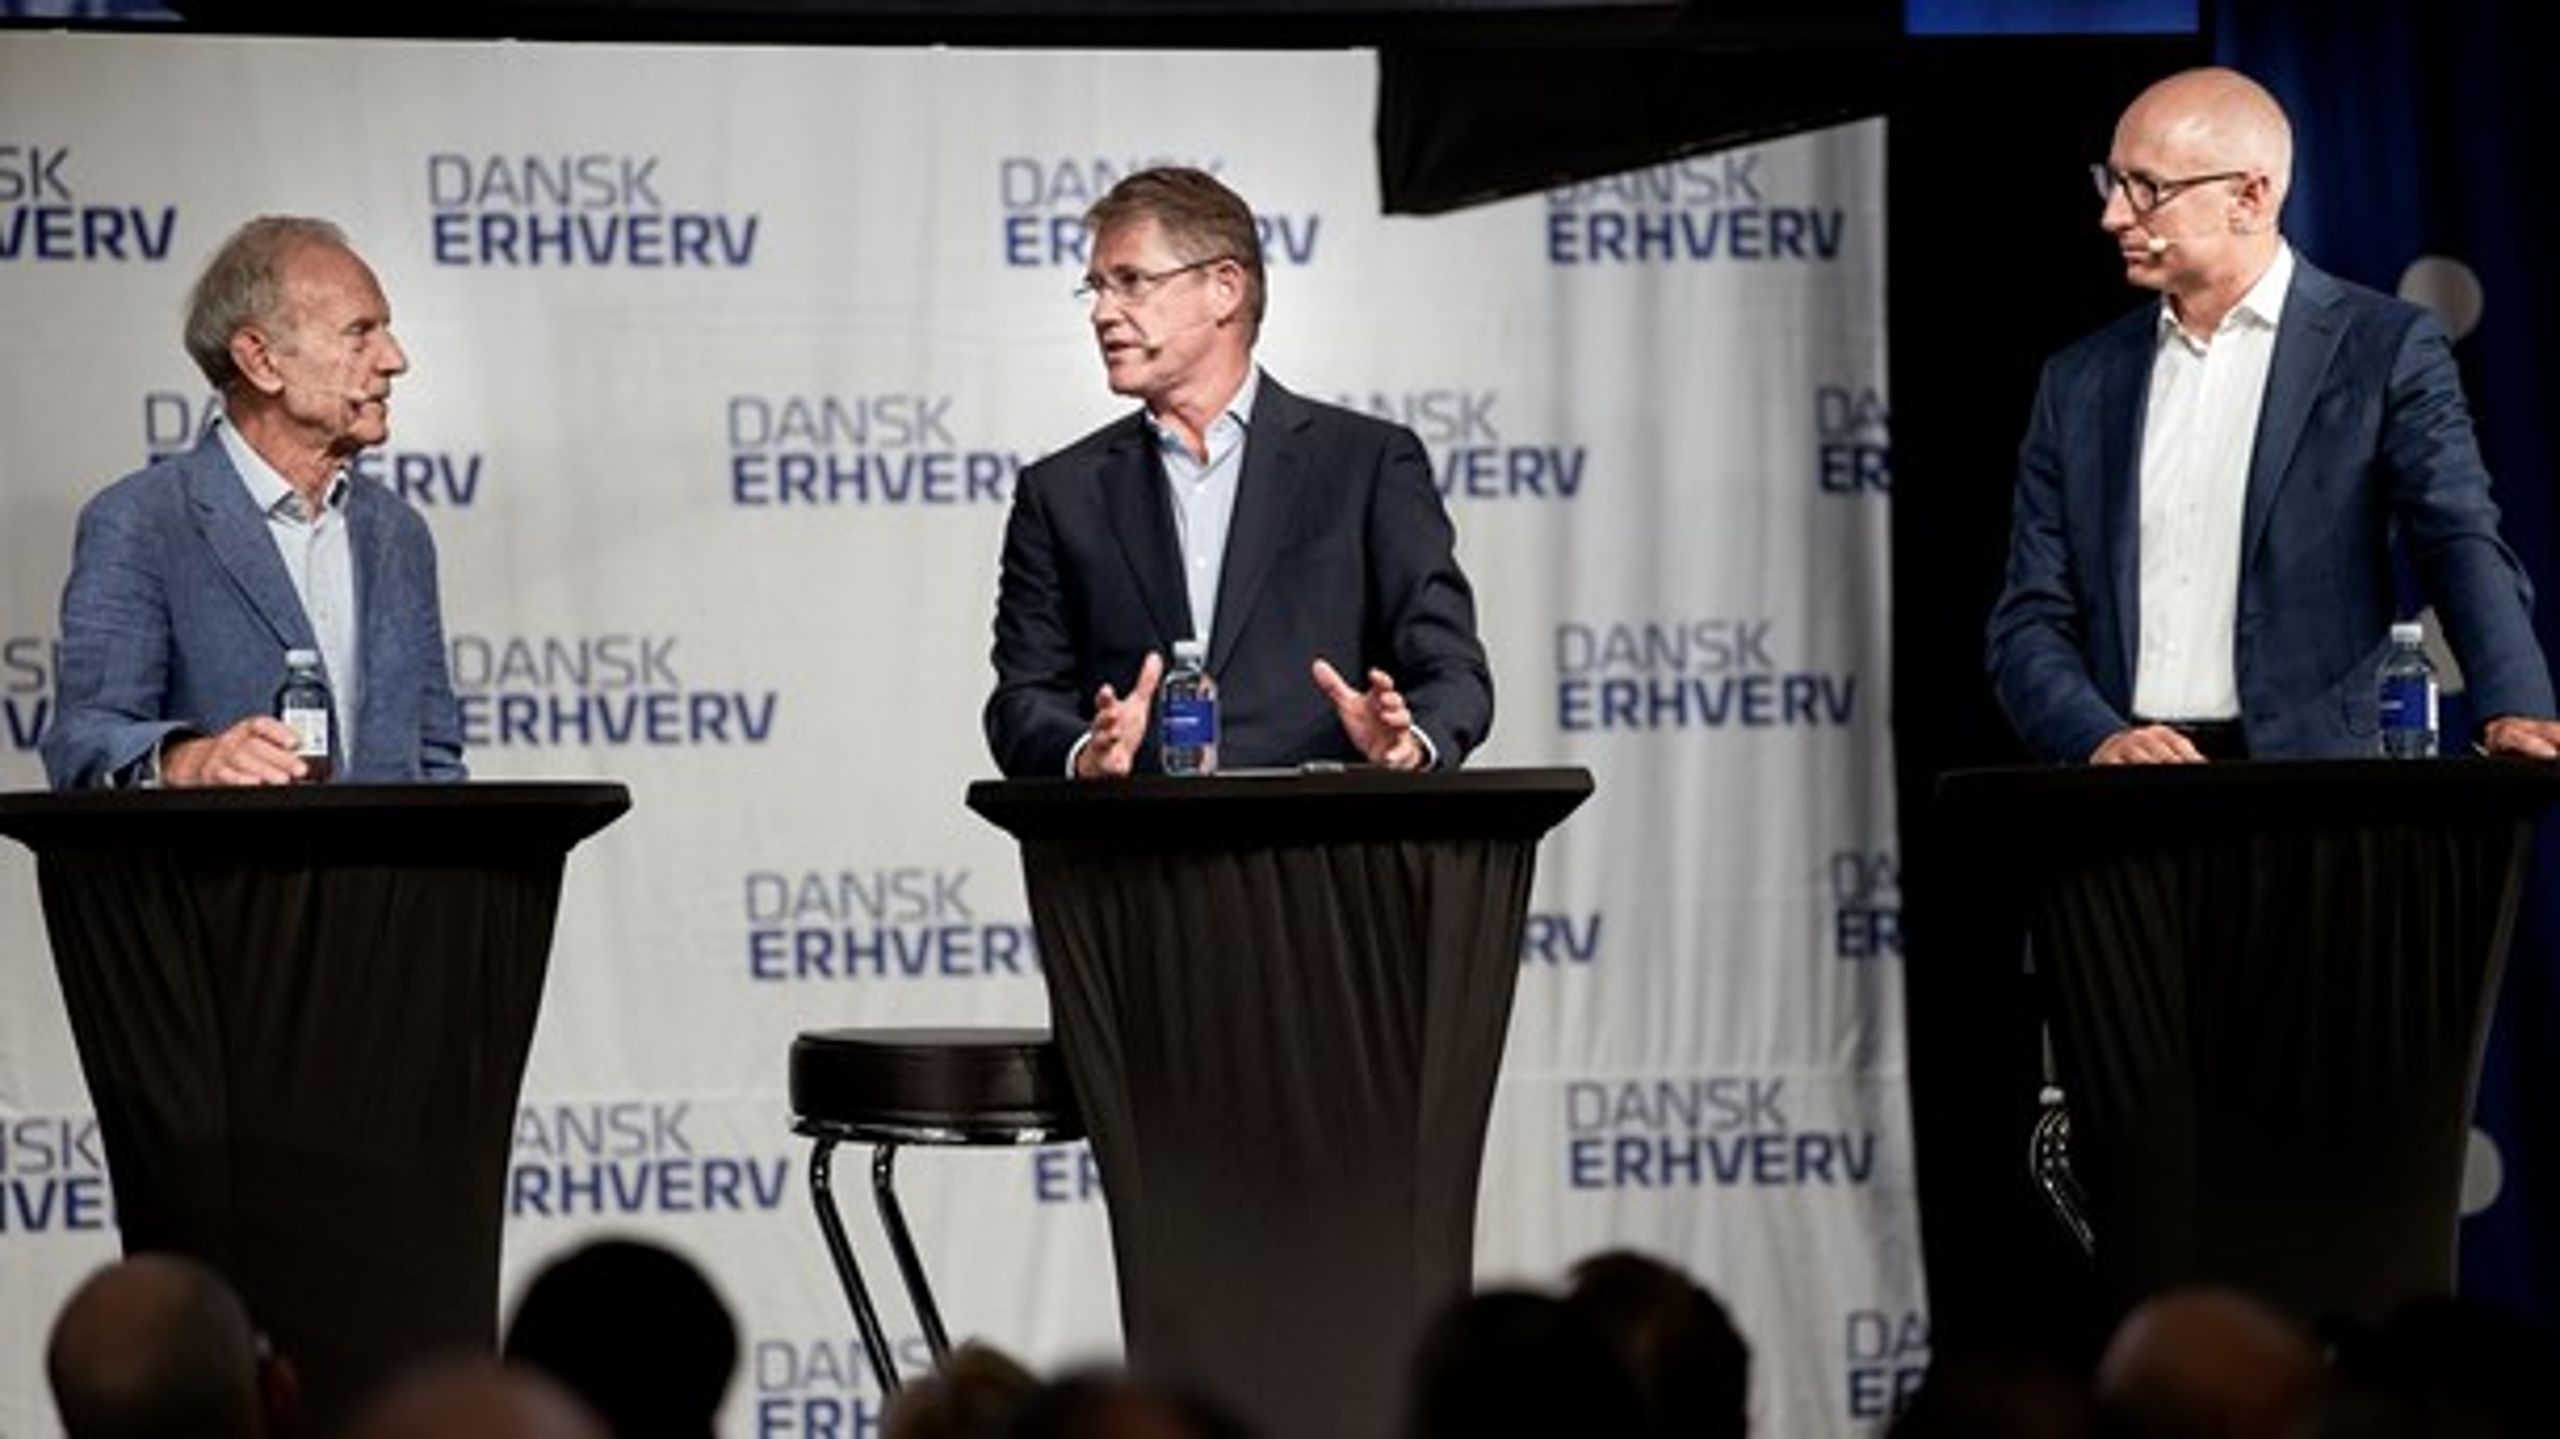 Novo Nordisk Fondens formand, Lars Rebien Sørensen (midten), har ført an i at advare mod en såkaldt osteklokkeeffekt i dansk klimapolitik, skriver Martin Lidegaard.